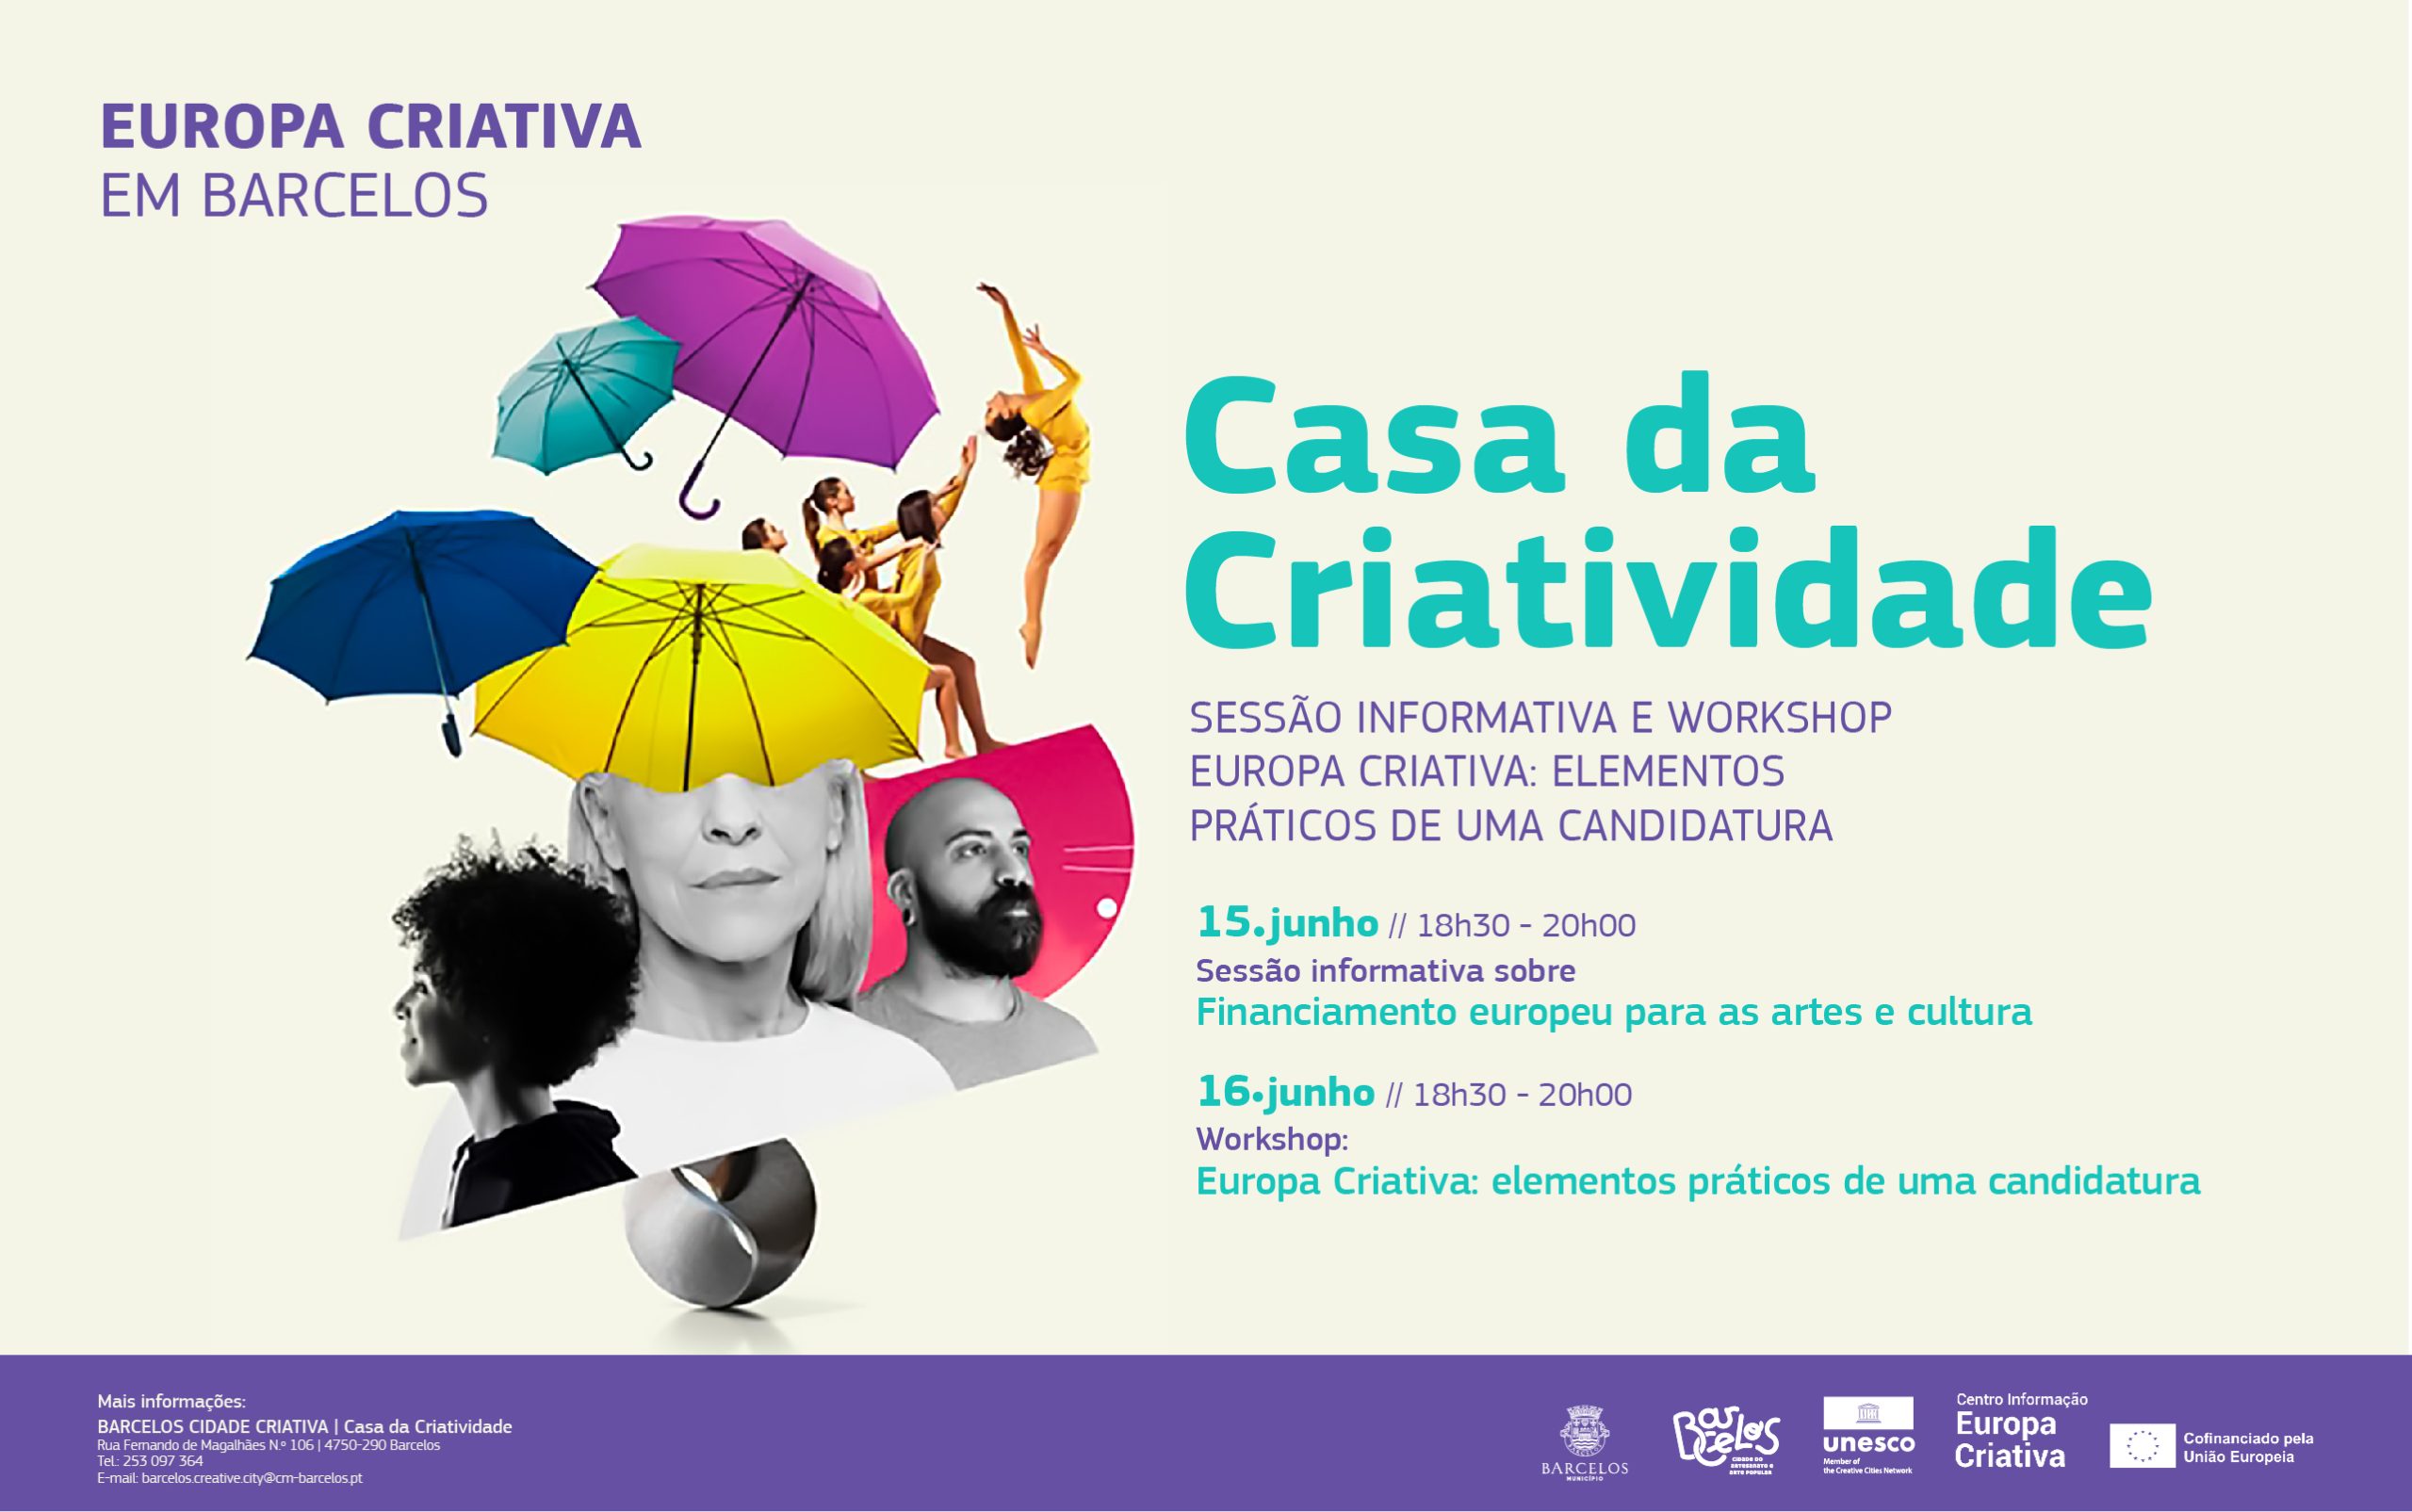 Casa da Criatividade promove sessão informativa e workshop sobre a “Europa Criativa”